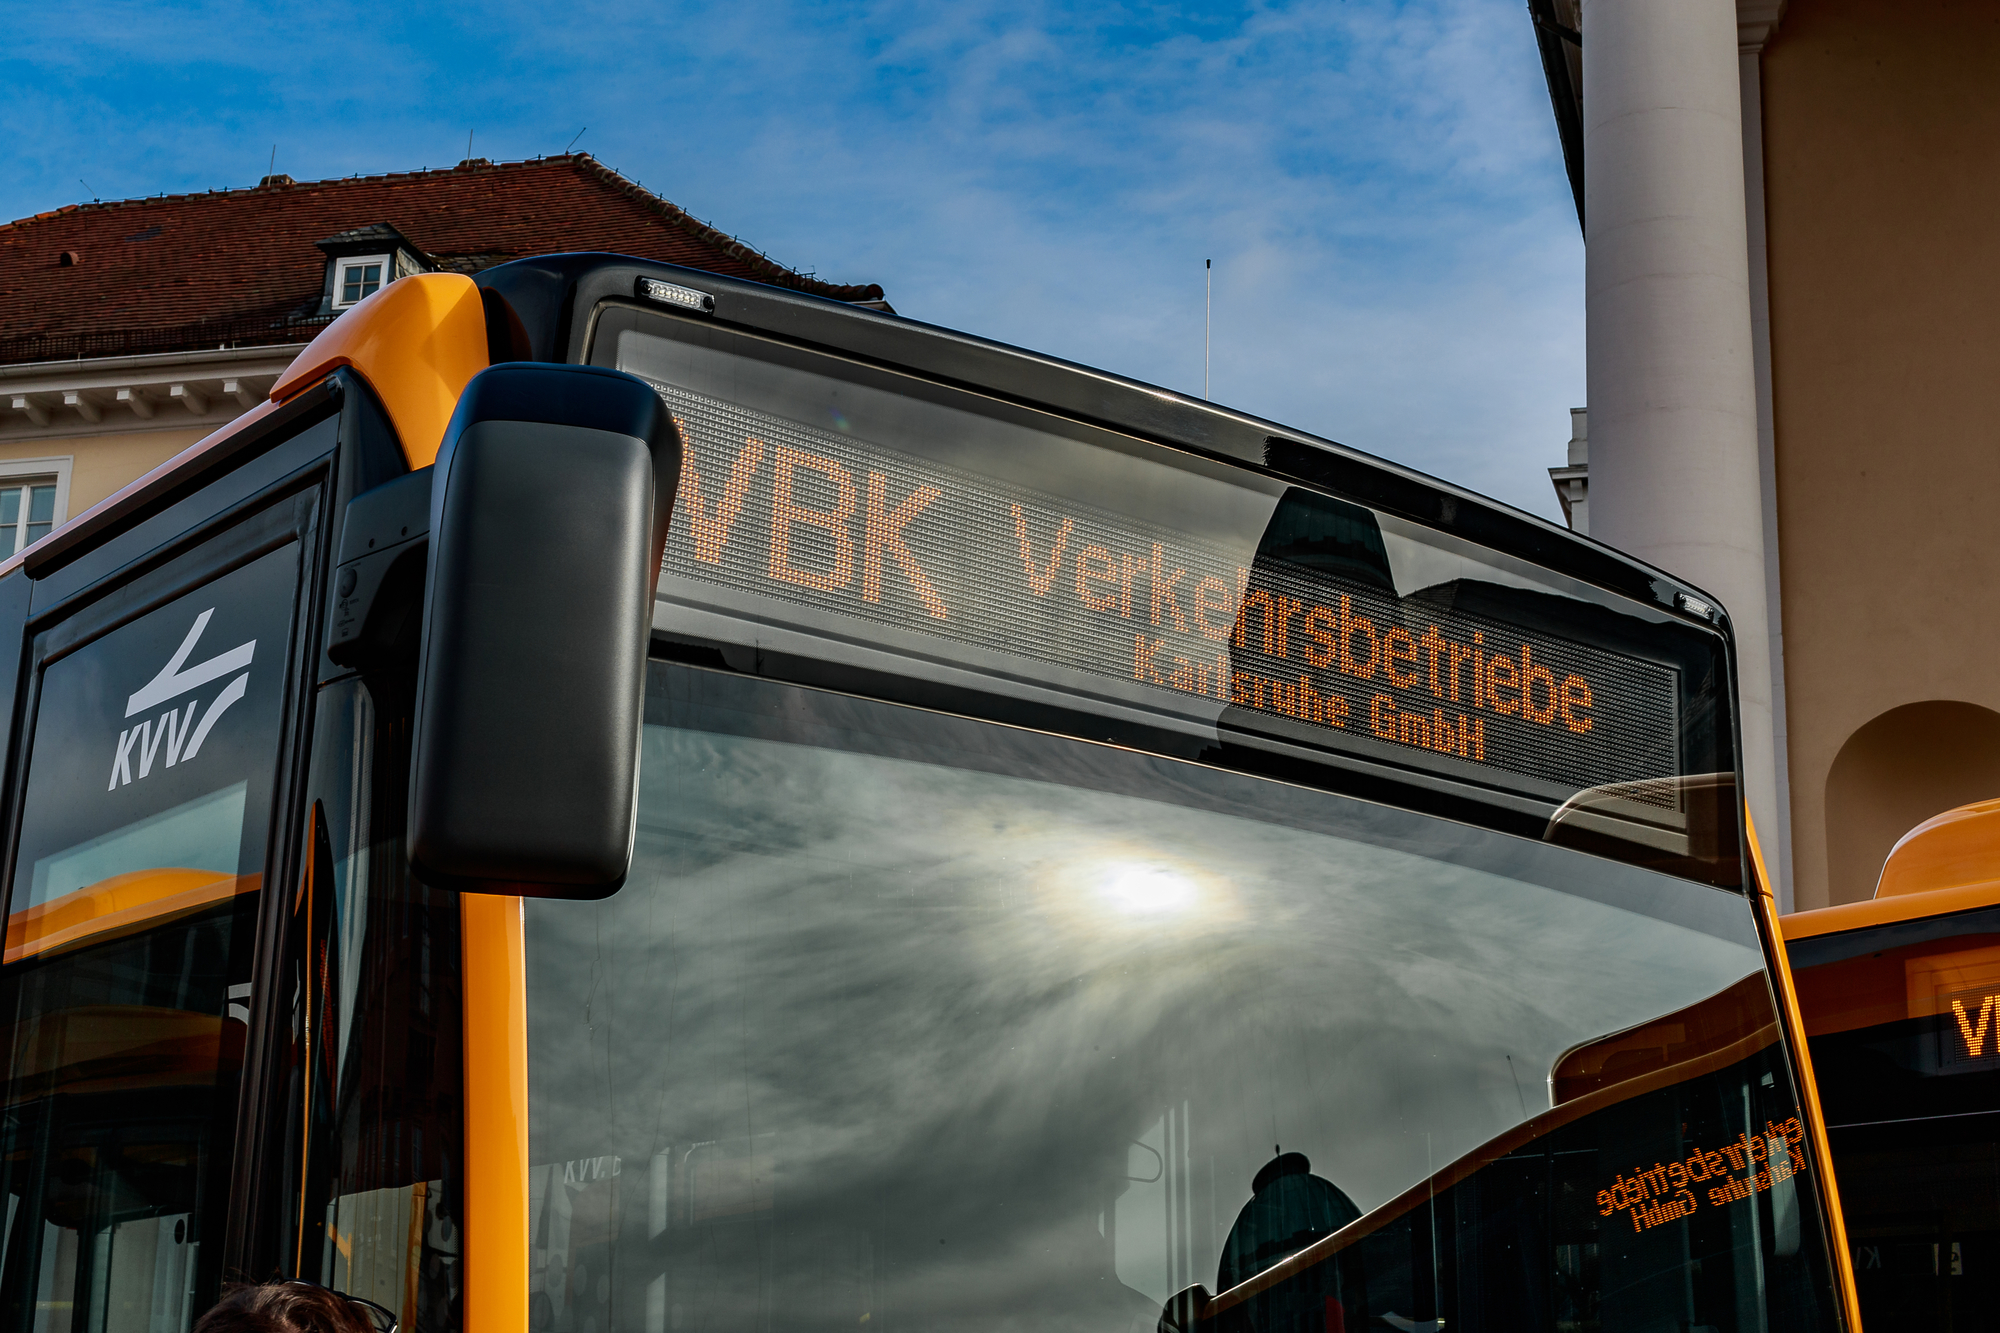 Zielfilmanzeiger an einem VBK-Bus mit der Anzeige "VBK Verkehrsbetriebe Karlsruhe"